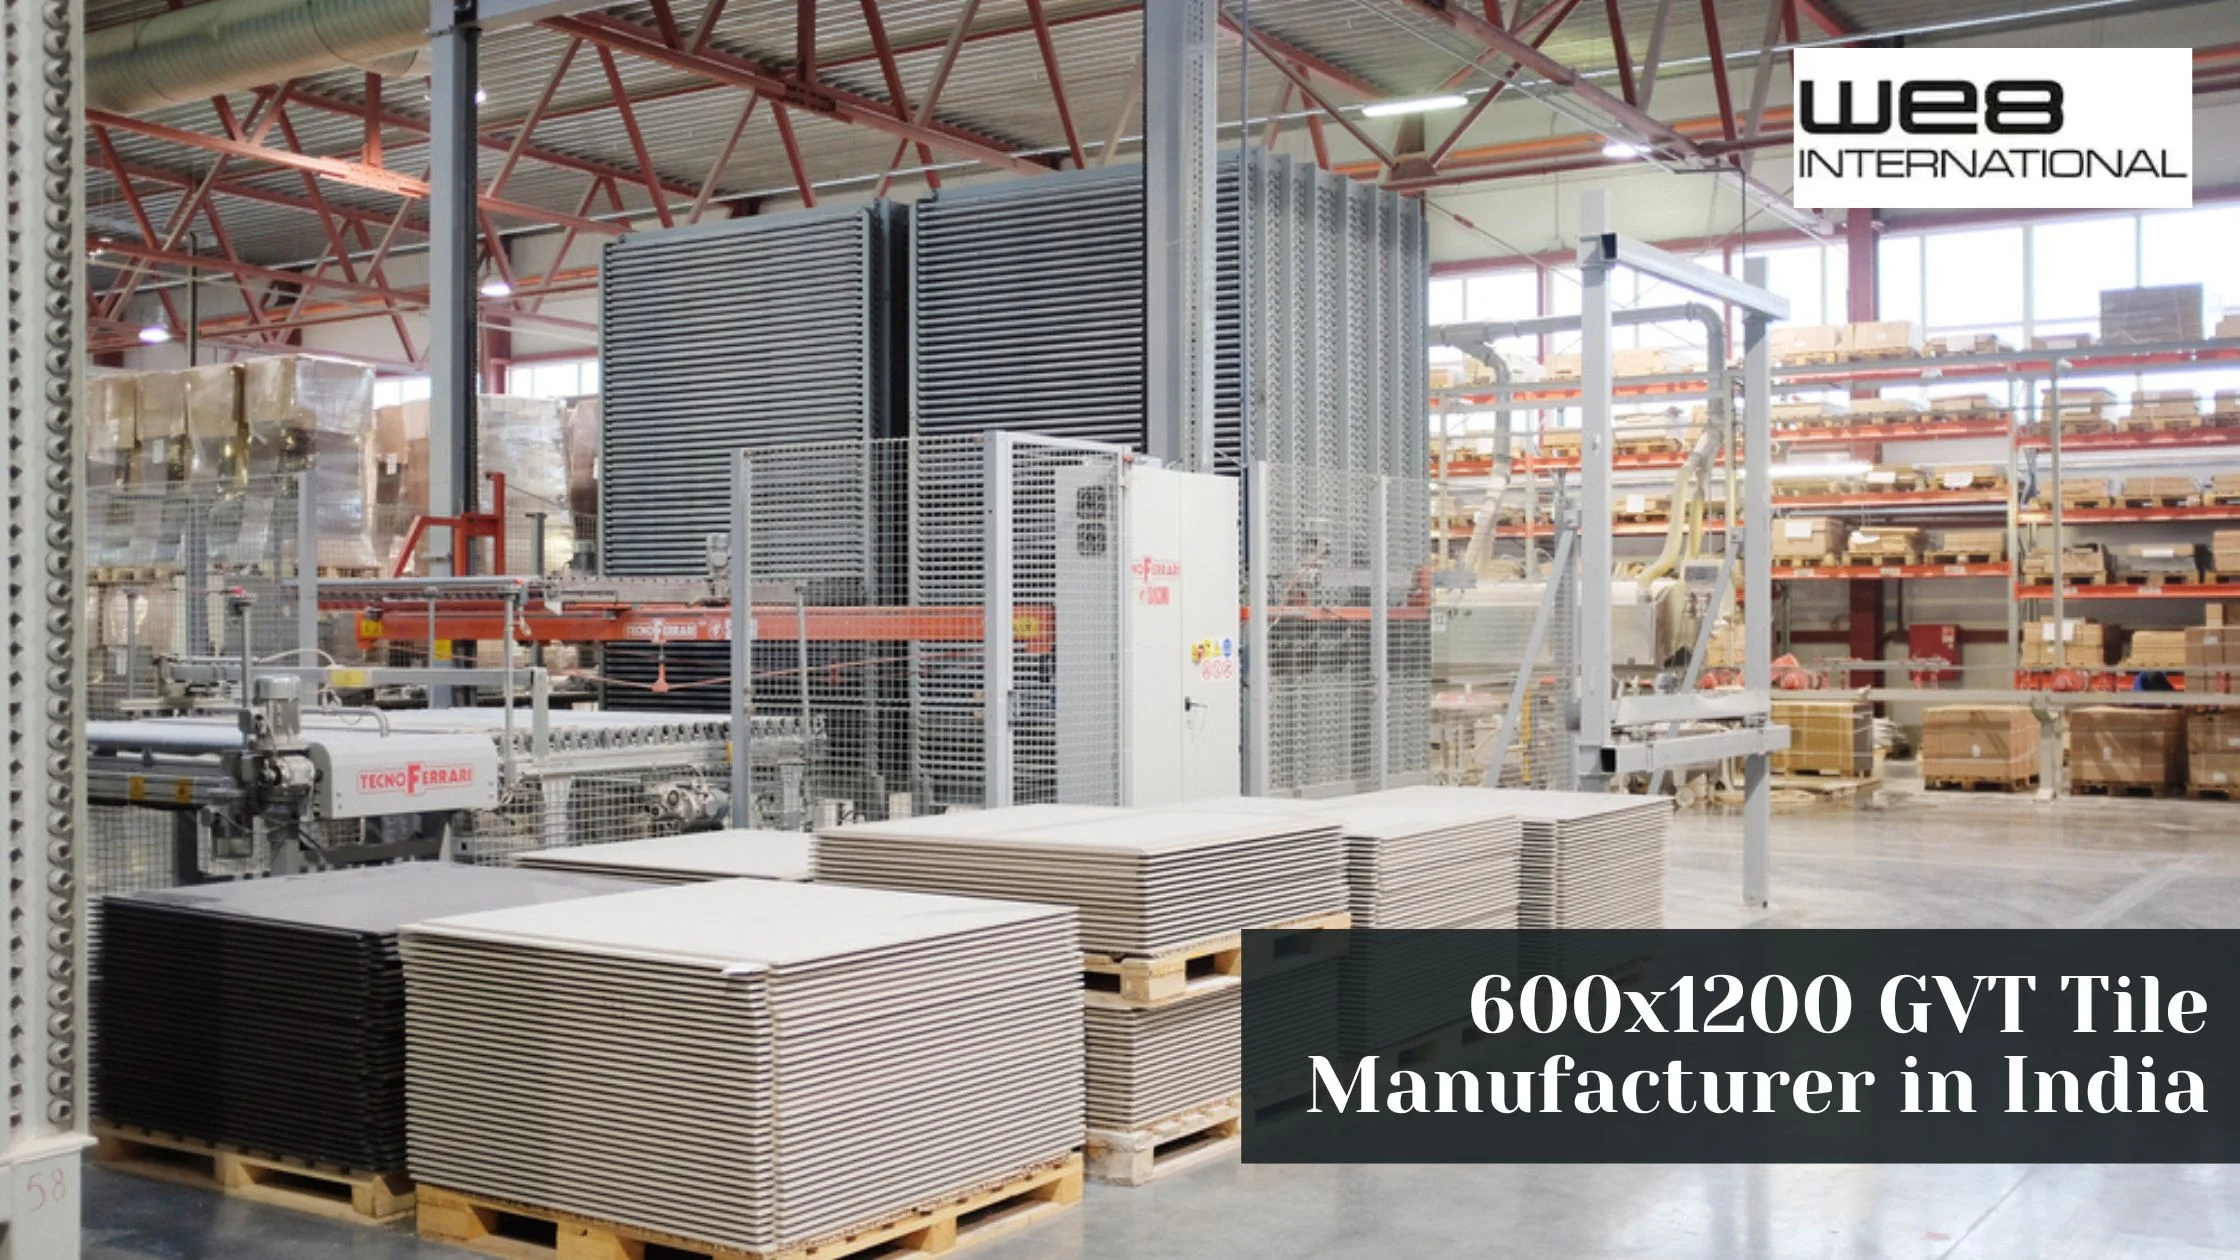 600x1200 GVT Tile Manufacturer in India